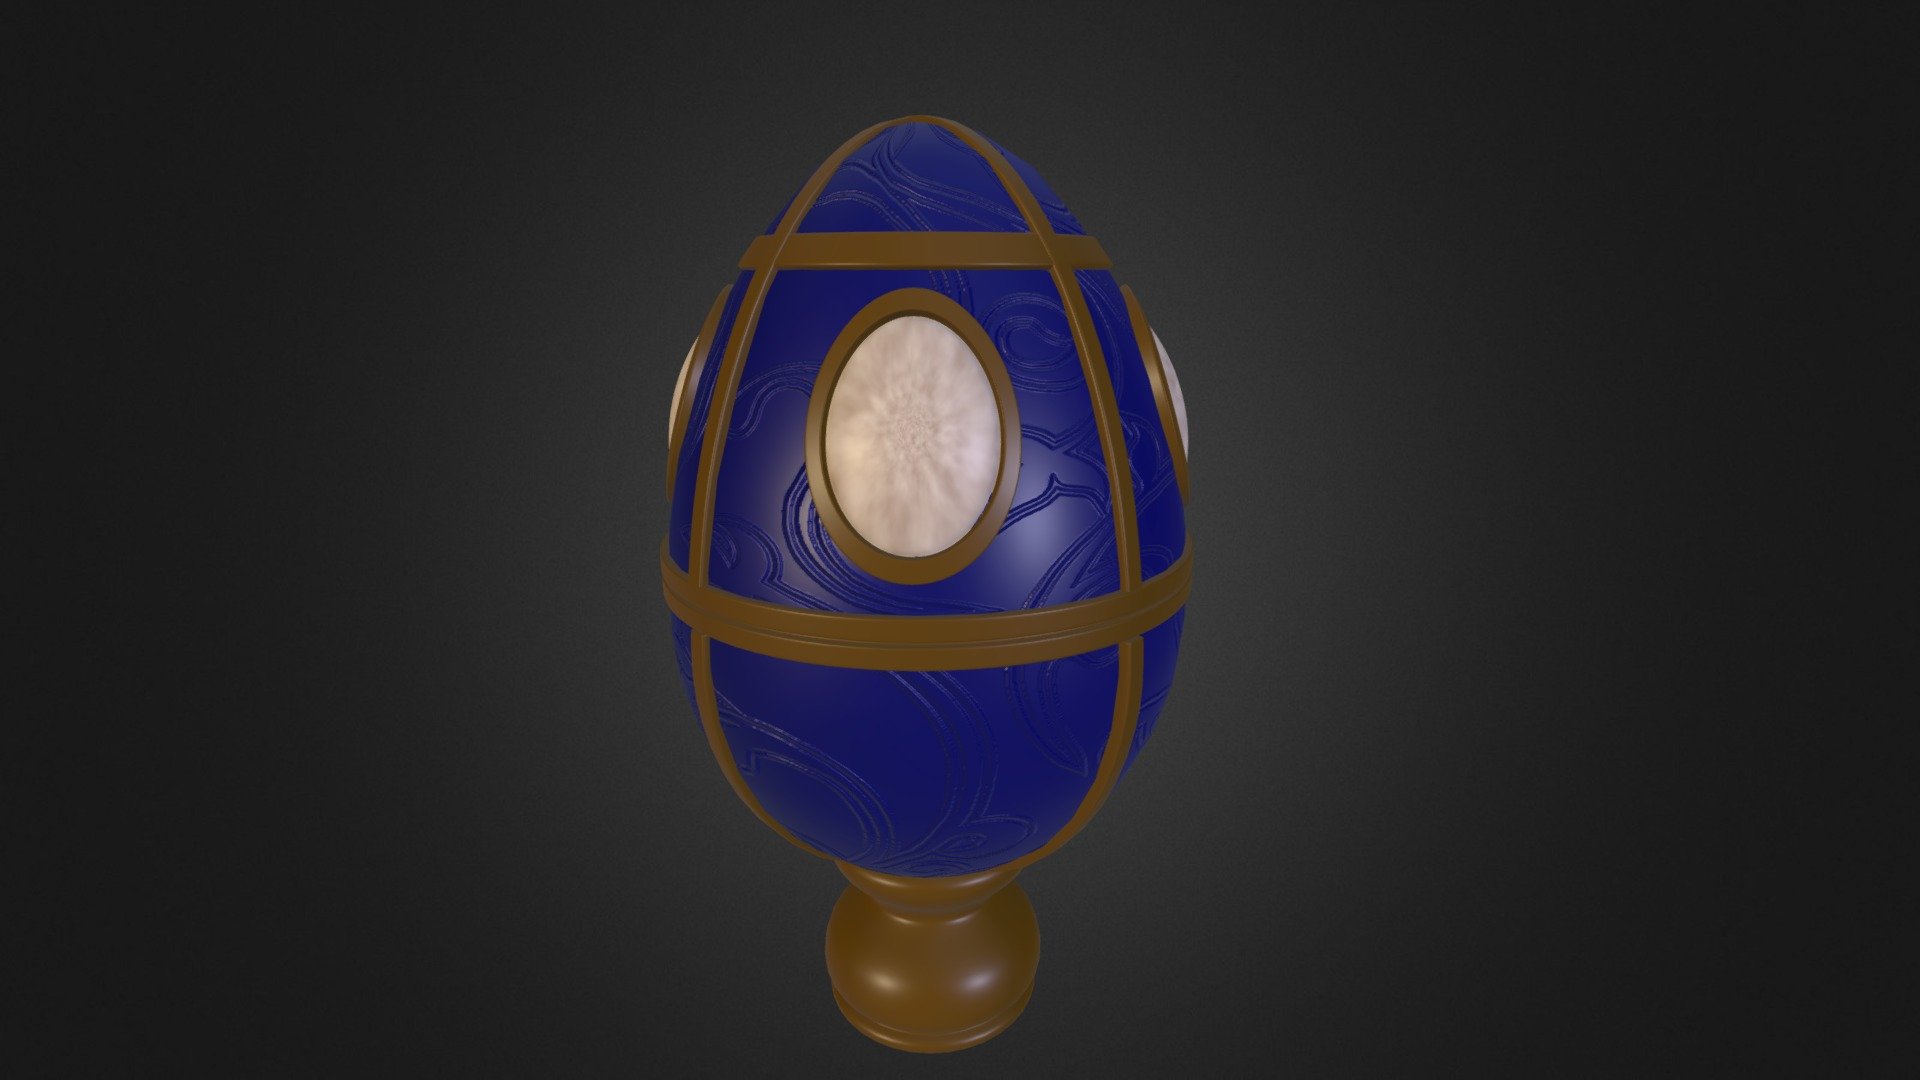 Faberge Egg  - Faberge Egg - 3D model by stevenjg100 3d model